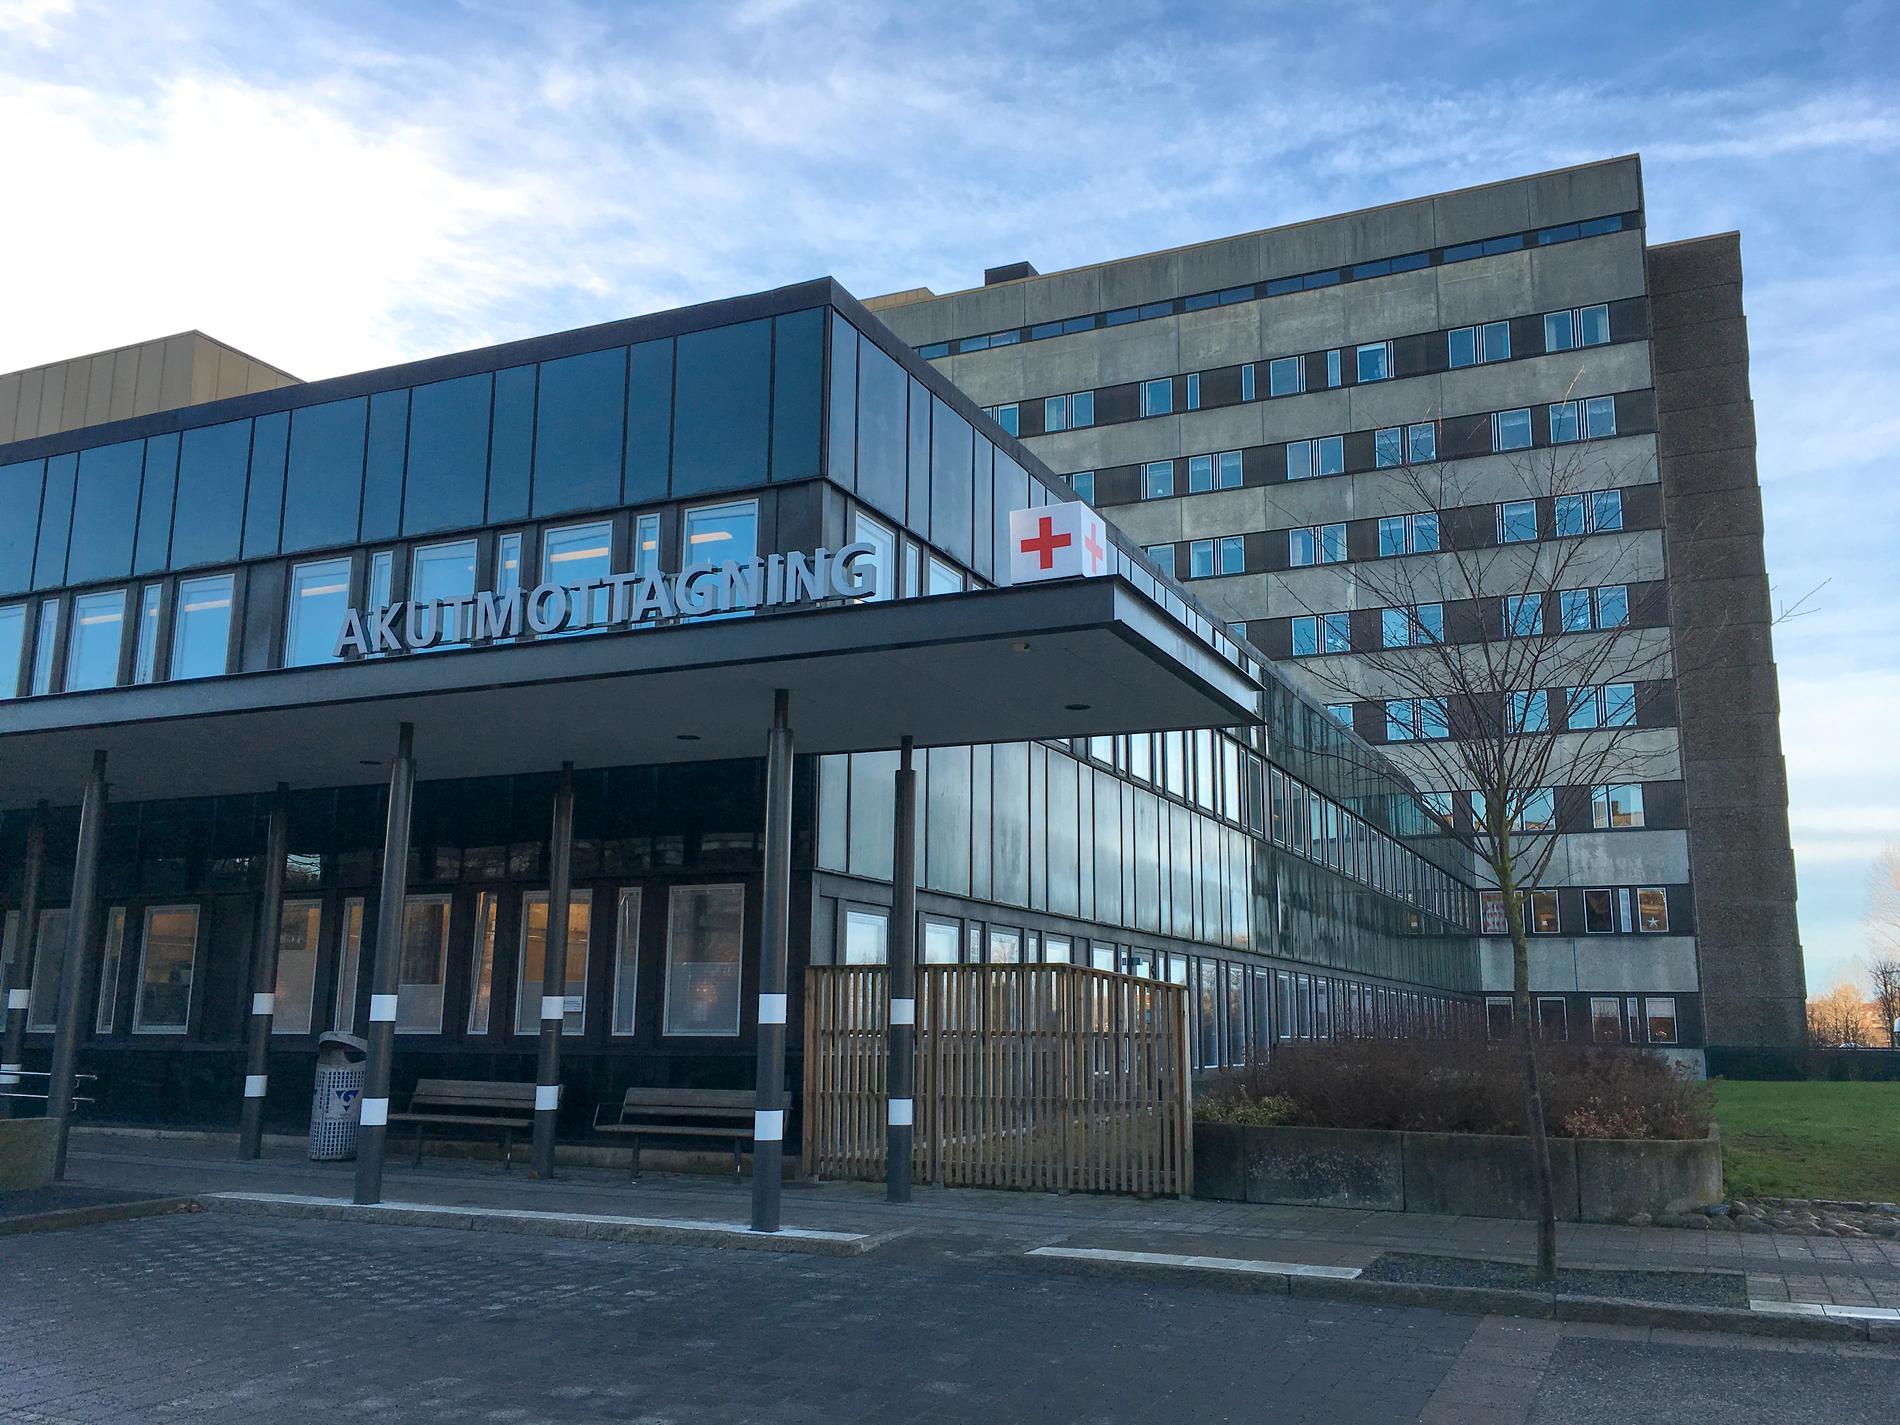 Akutmottagningen vid Östra sjukhuset i Göteborg får kritik av Ivo efter att en man skickats hem med sprucken blindtarm. Arkivbild.